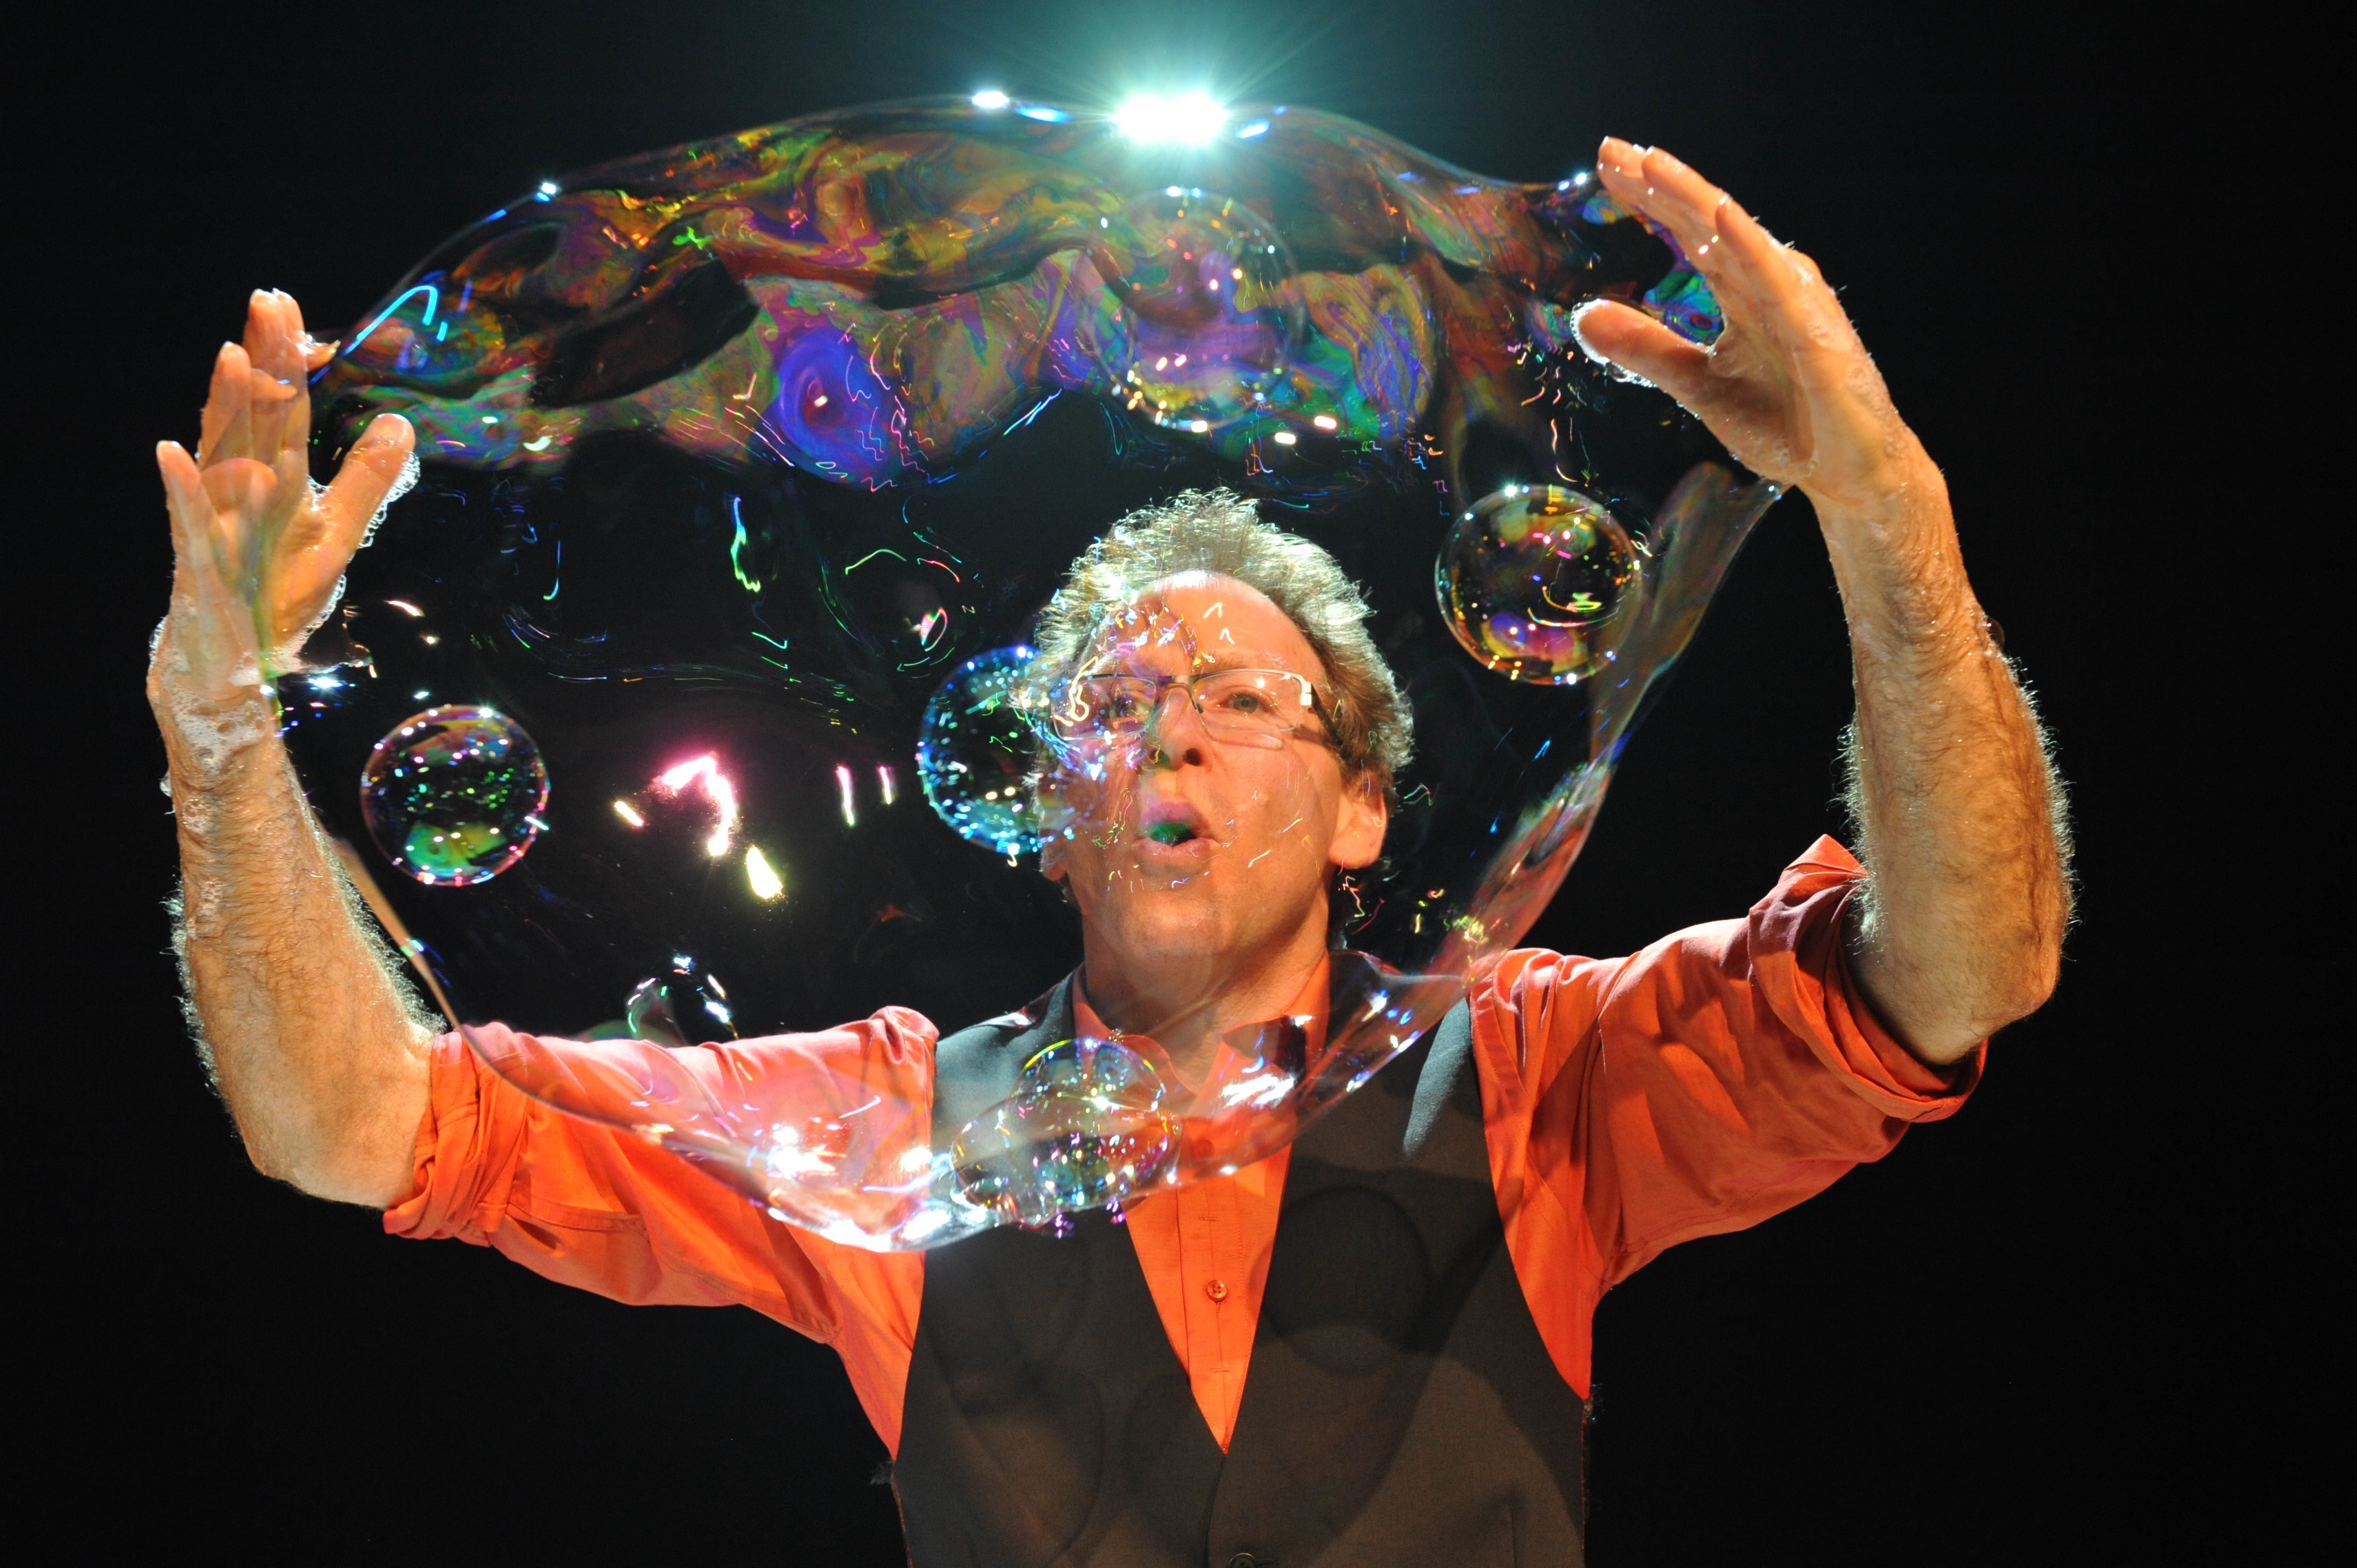 Show man show woman. Man in Bubble. Bubble show. Amazing Bubbles. The Bubble Trick.